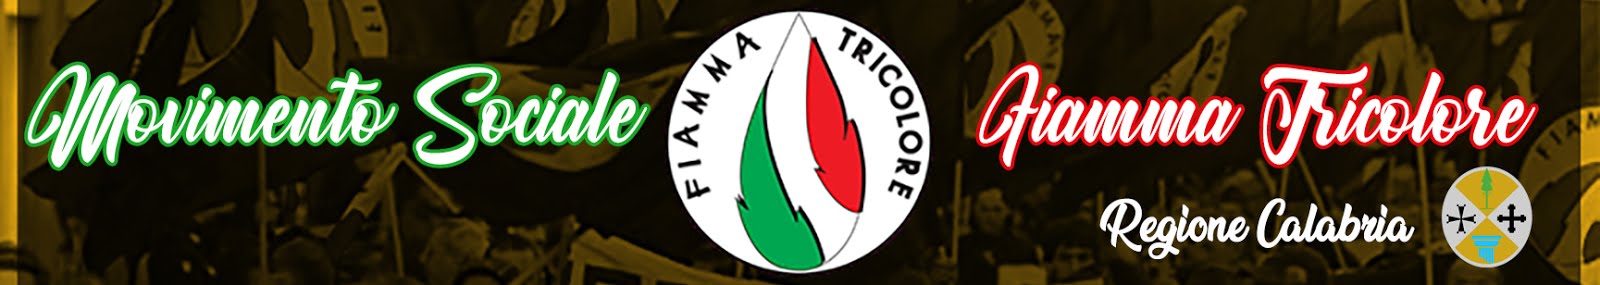 Movimento Sociale Fiamma Tricolore - Regione Calabria